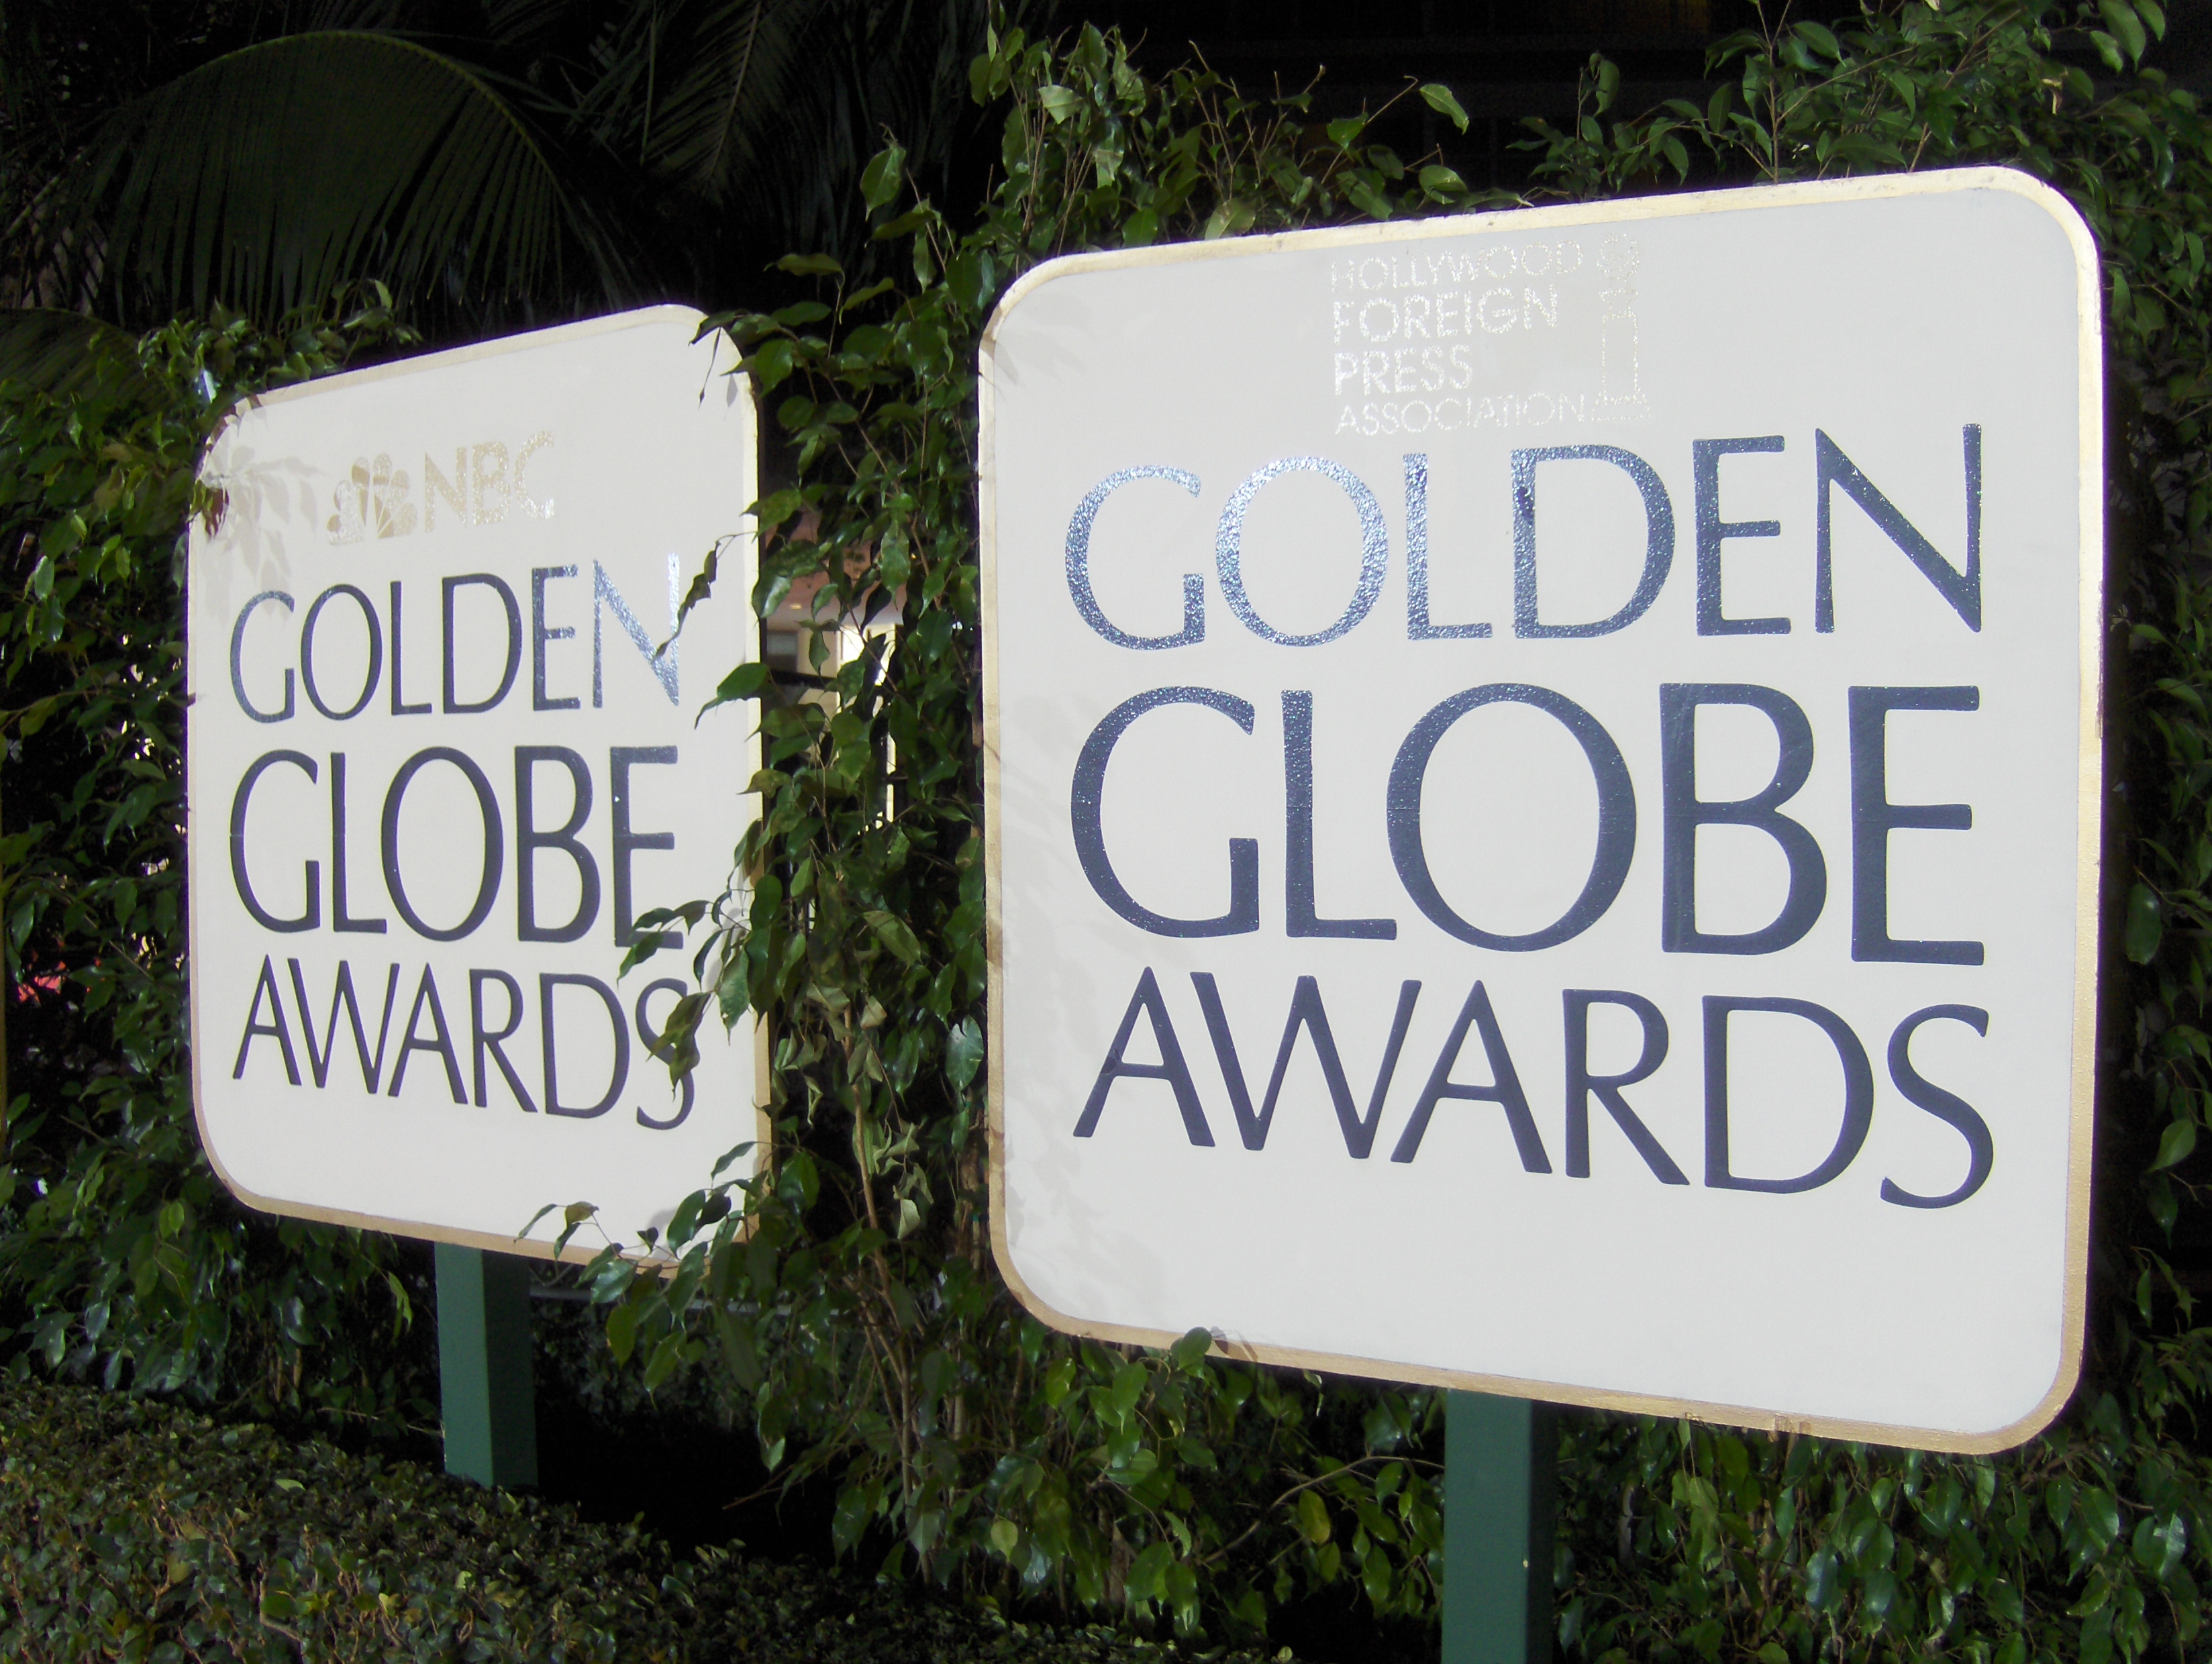 Golden Globes 2018: La gala más esperada del año ya tiene nominados